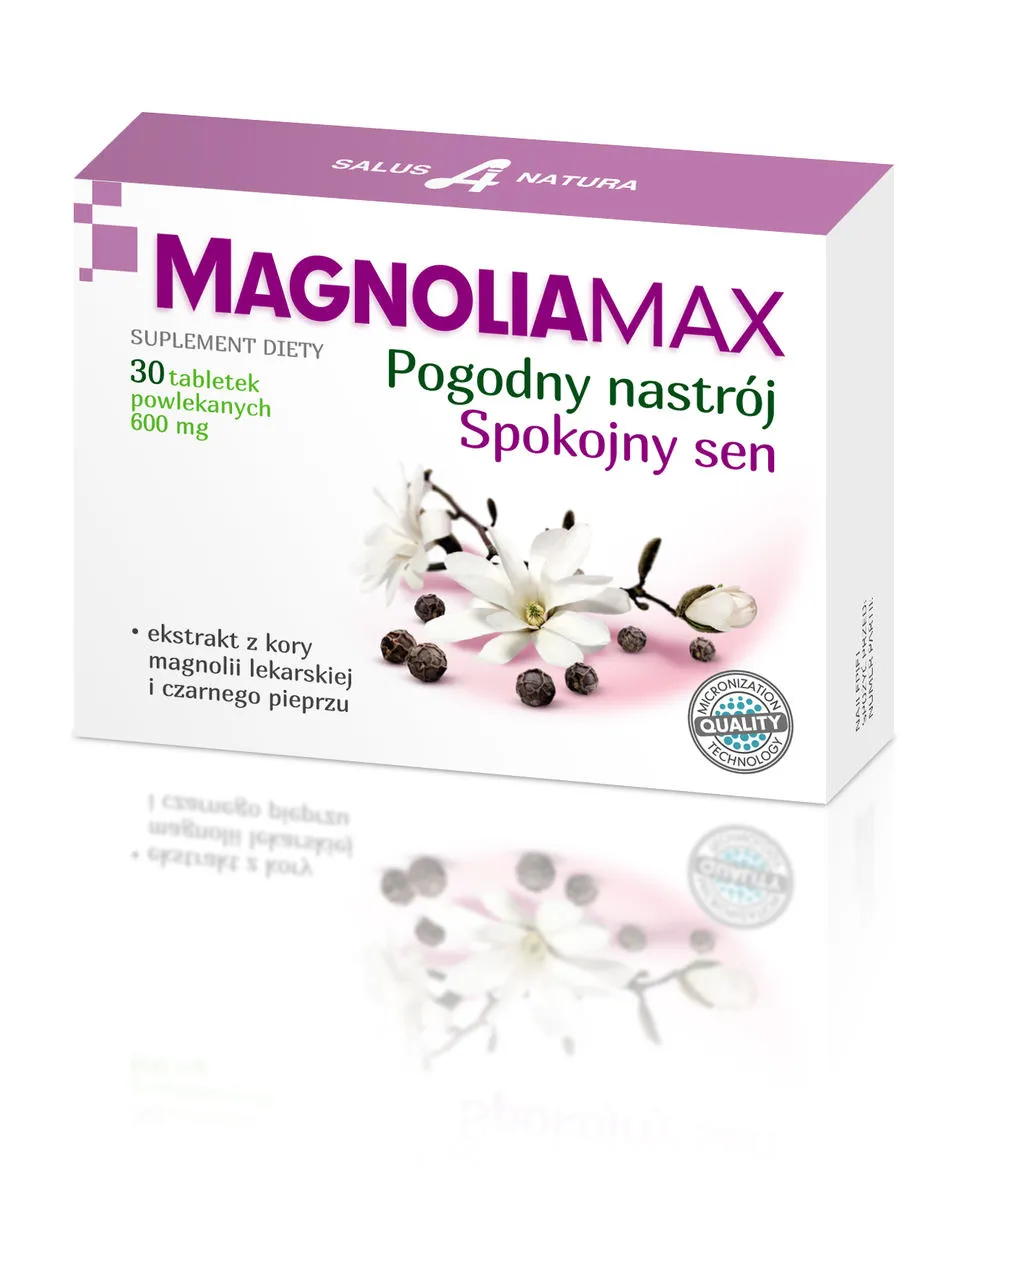 Magnoliamax, suplement diety, 30 tabletek